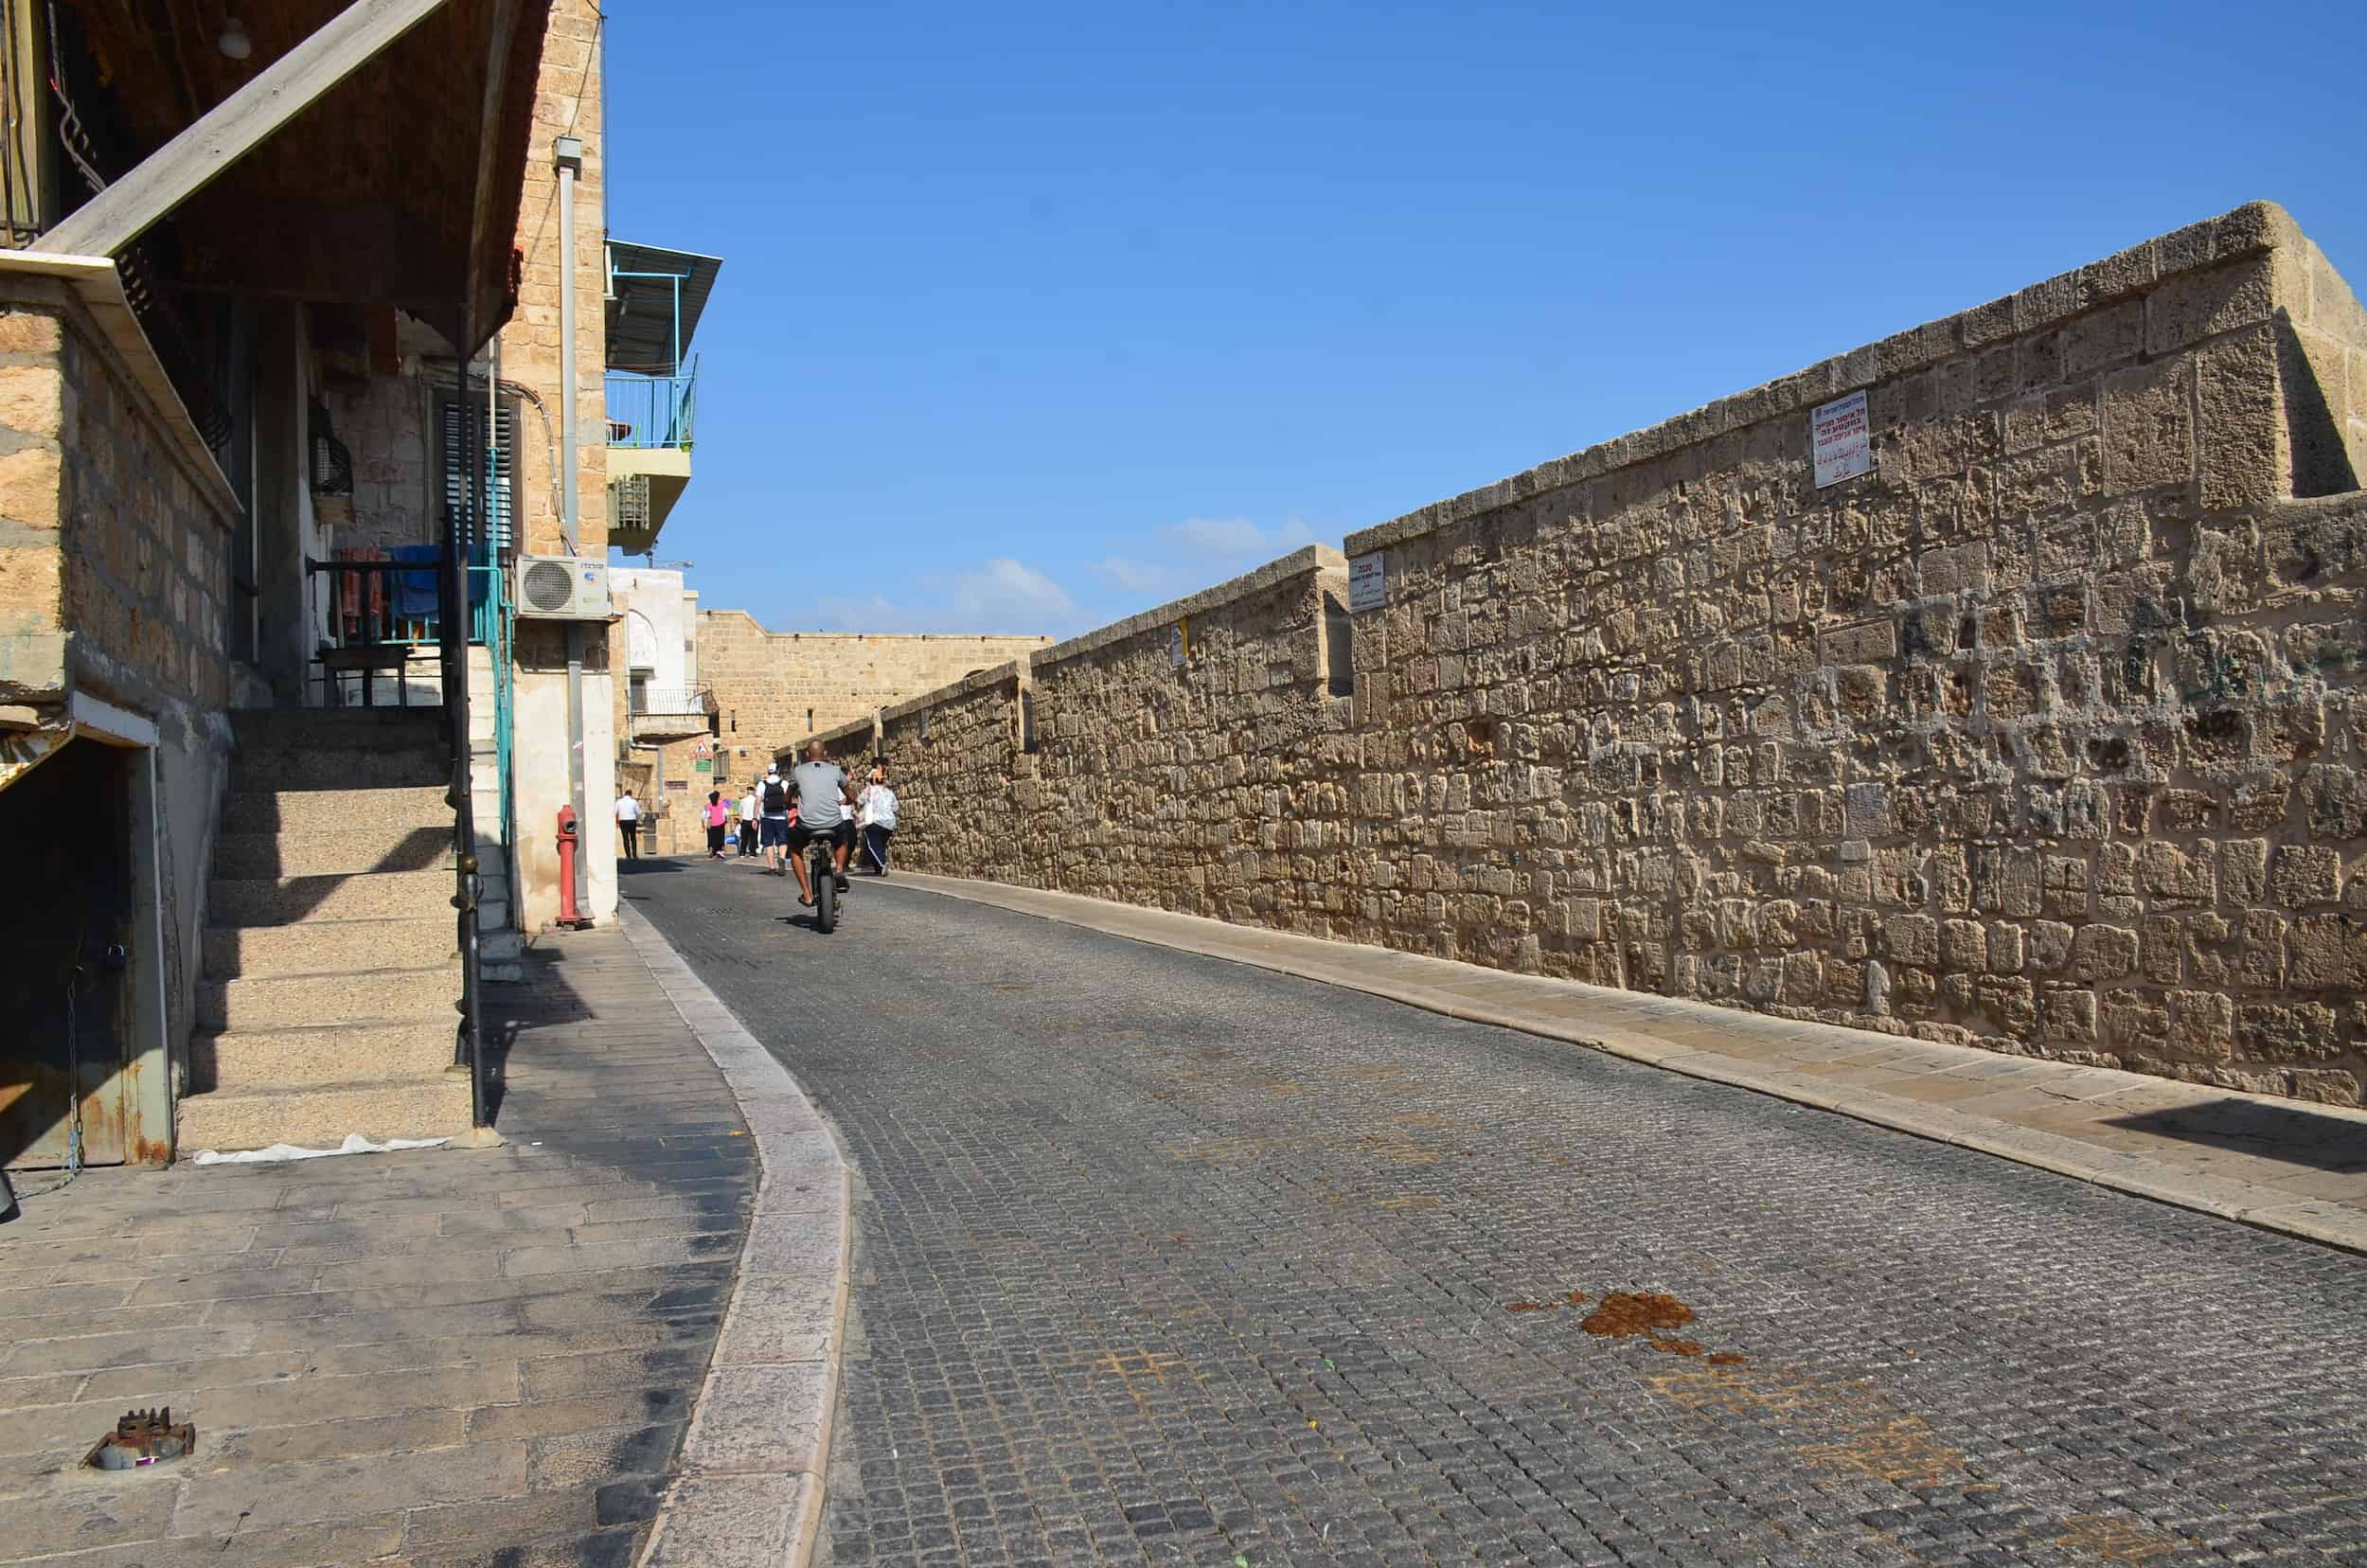 Walking along the sea walls in Acre, Israel